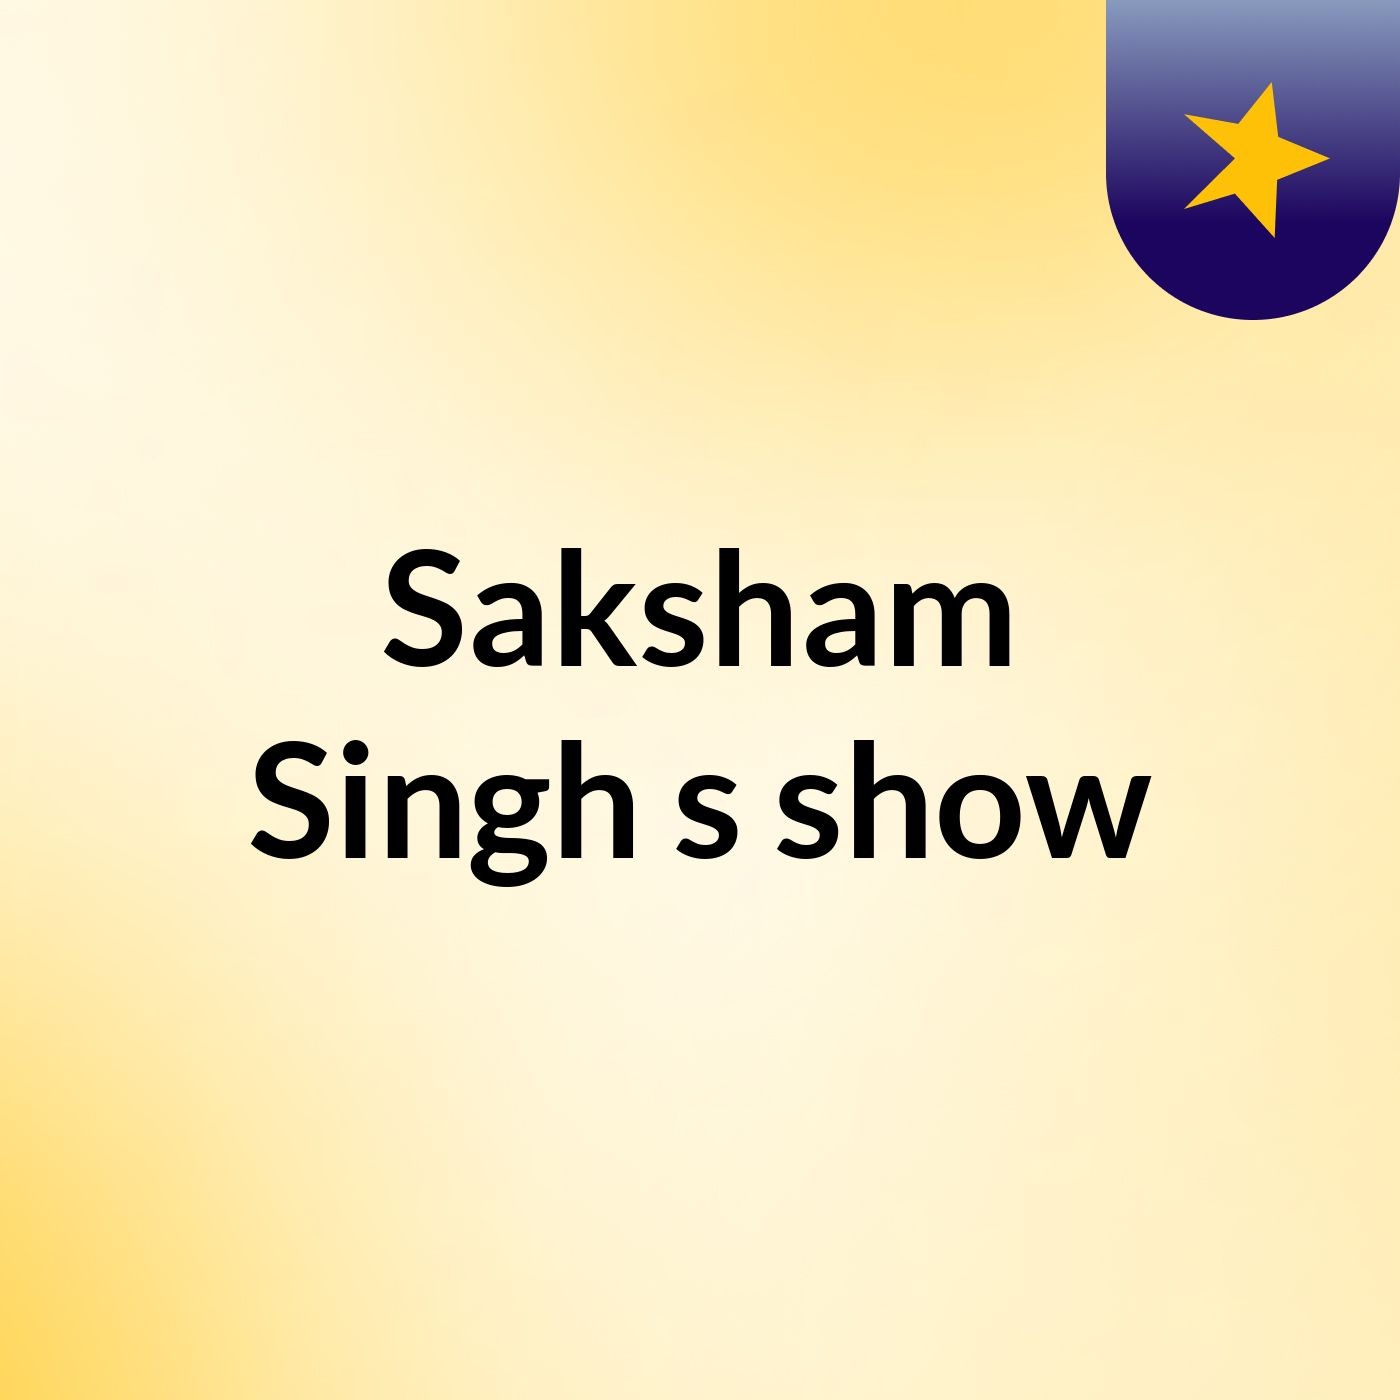 Saksham Singh's show